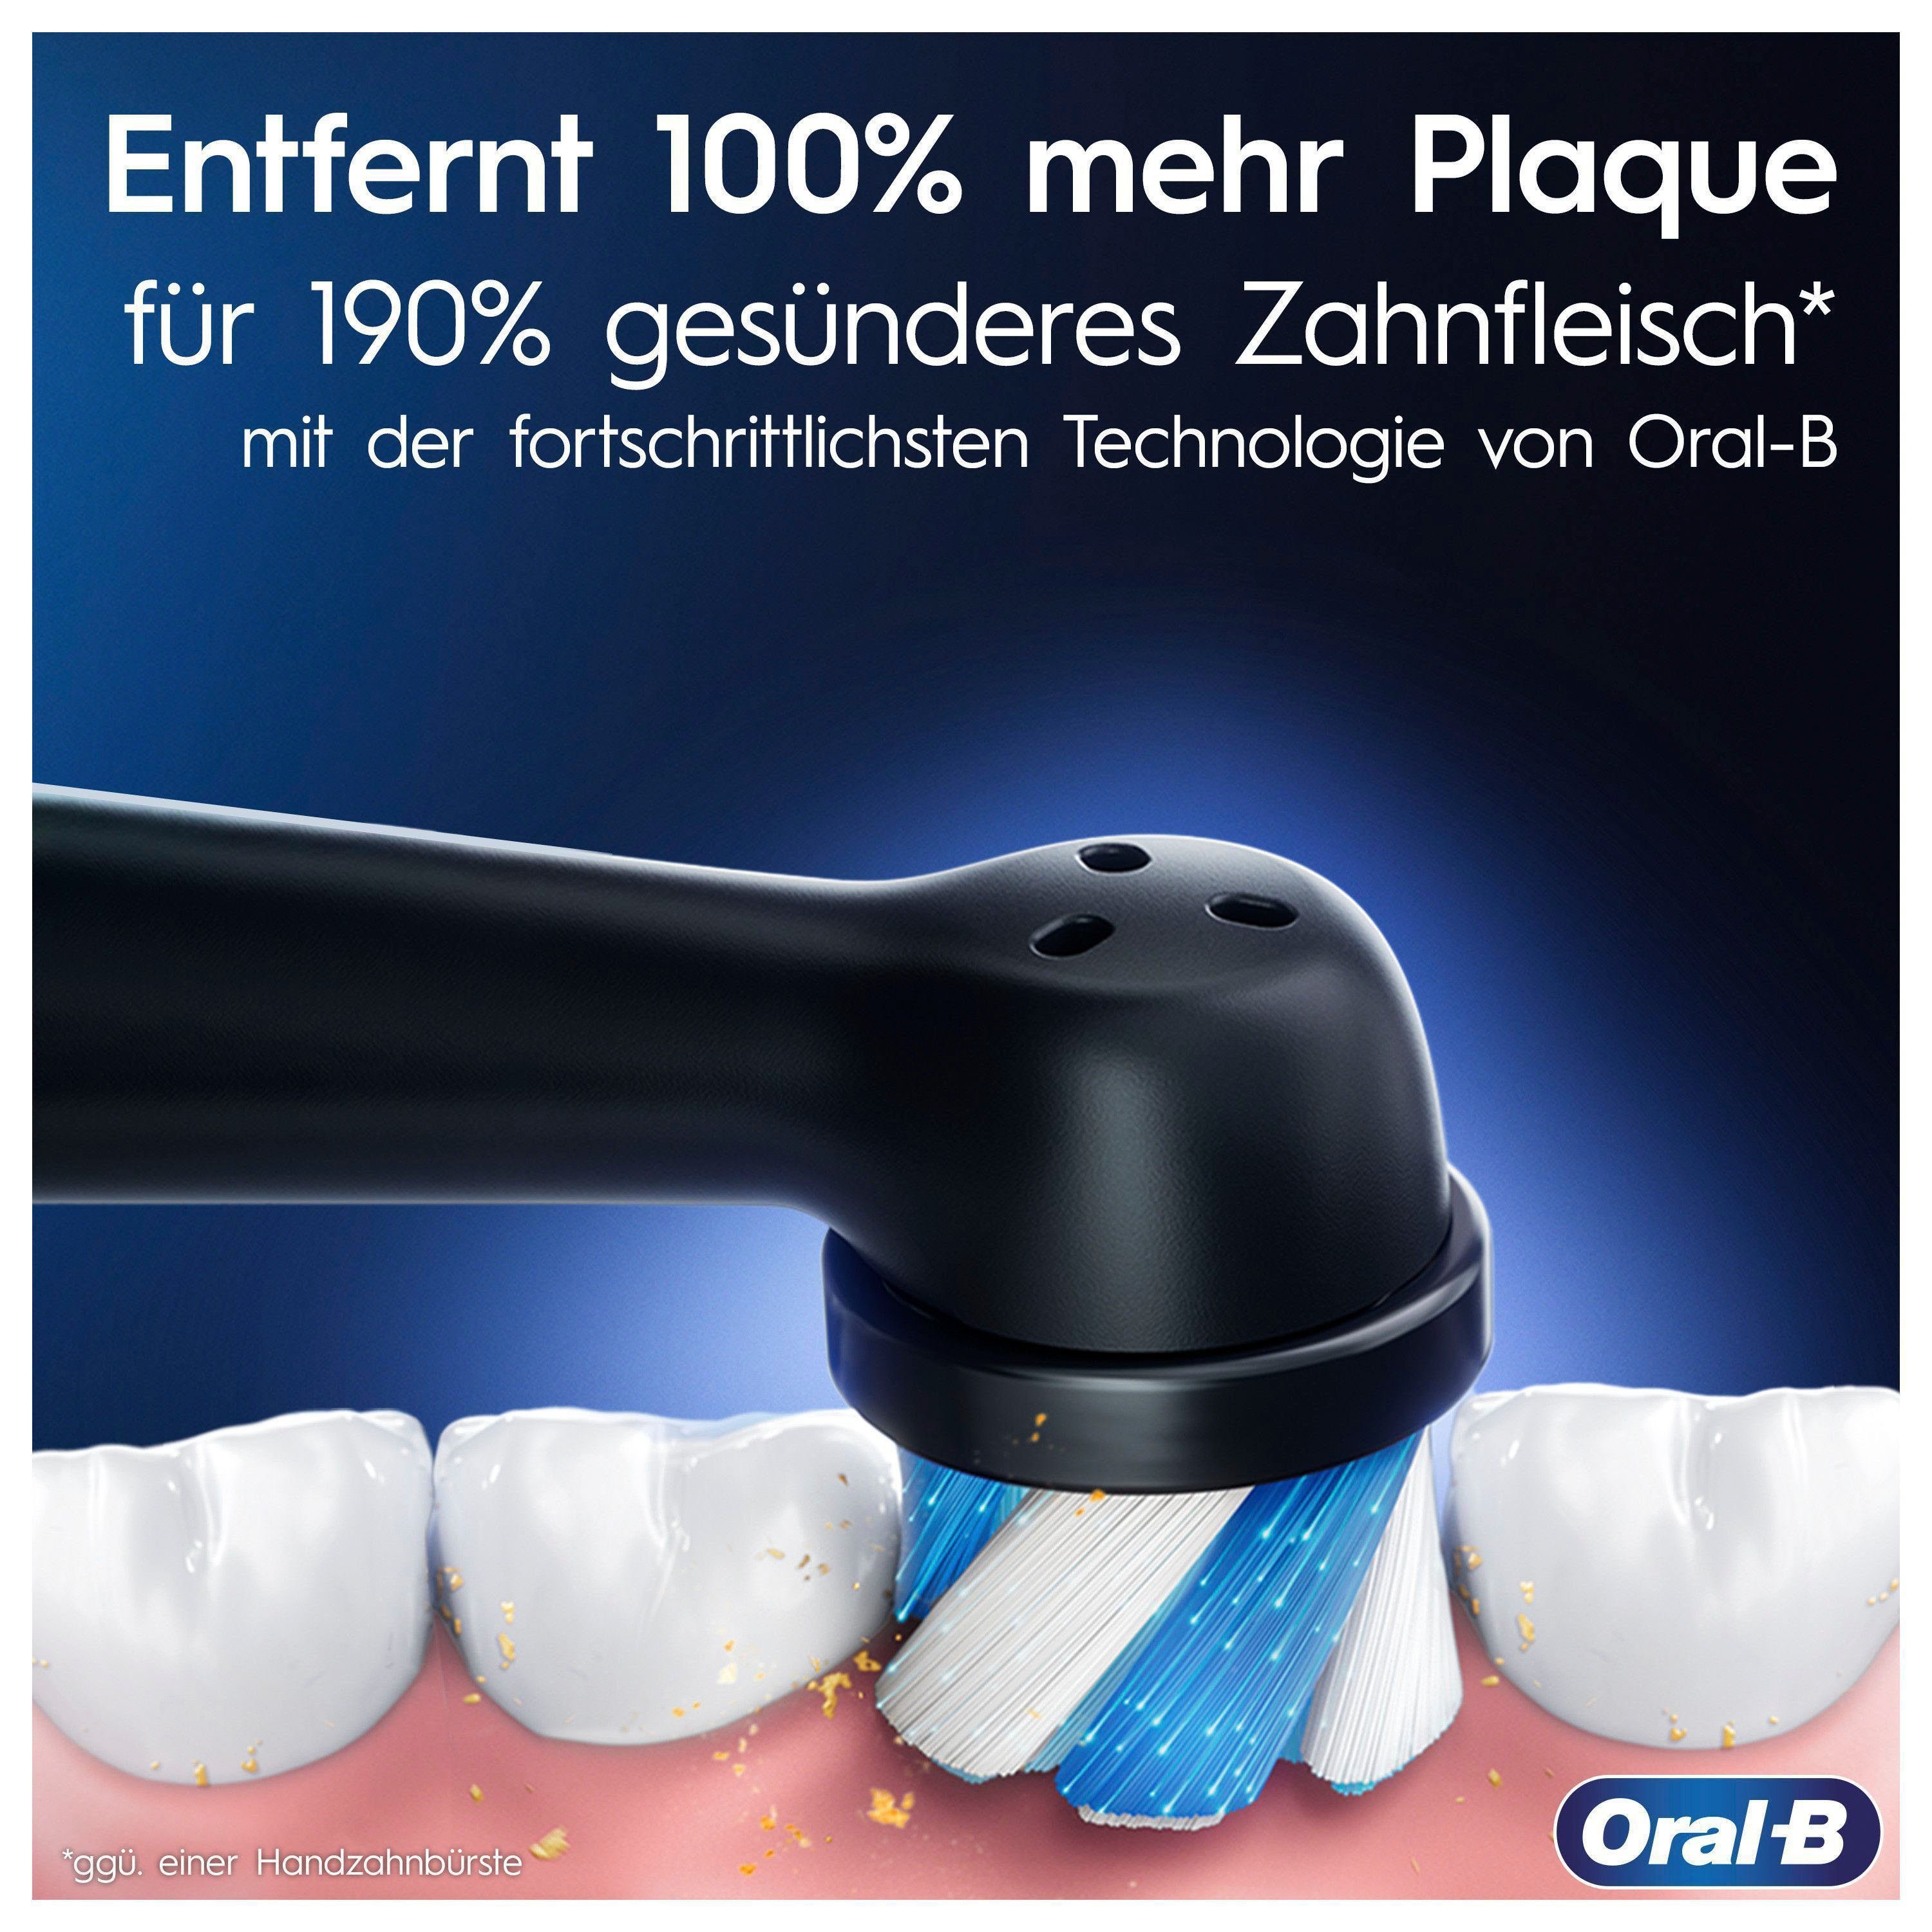 Oral-B Elektrische Zahnbürste iO 5 Display, blue 7, 2 Putzmodi, mit St., Aufsteckbürsten: Magnet-Technologie, sapphire Reiseetui